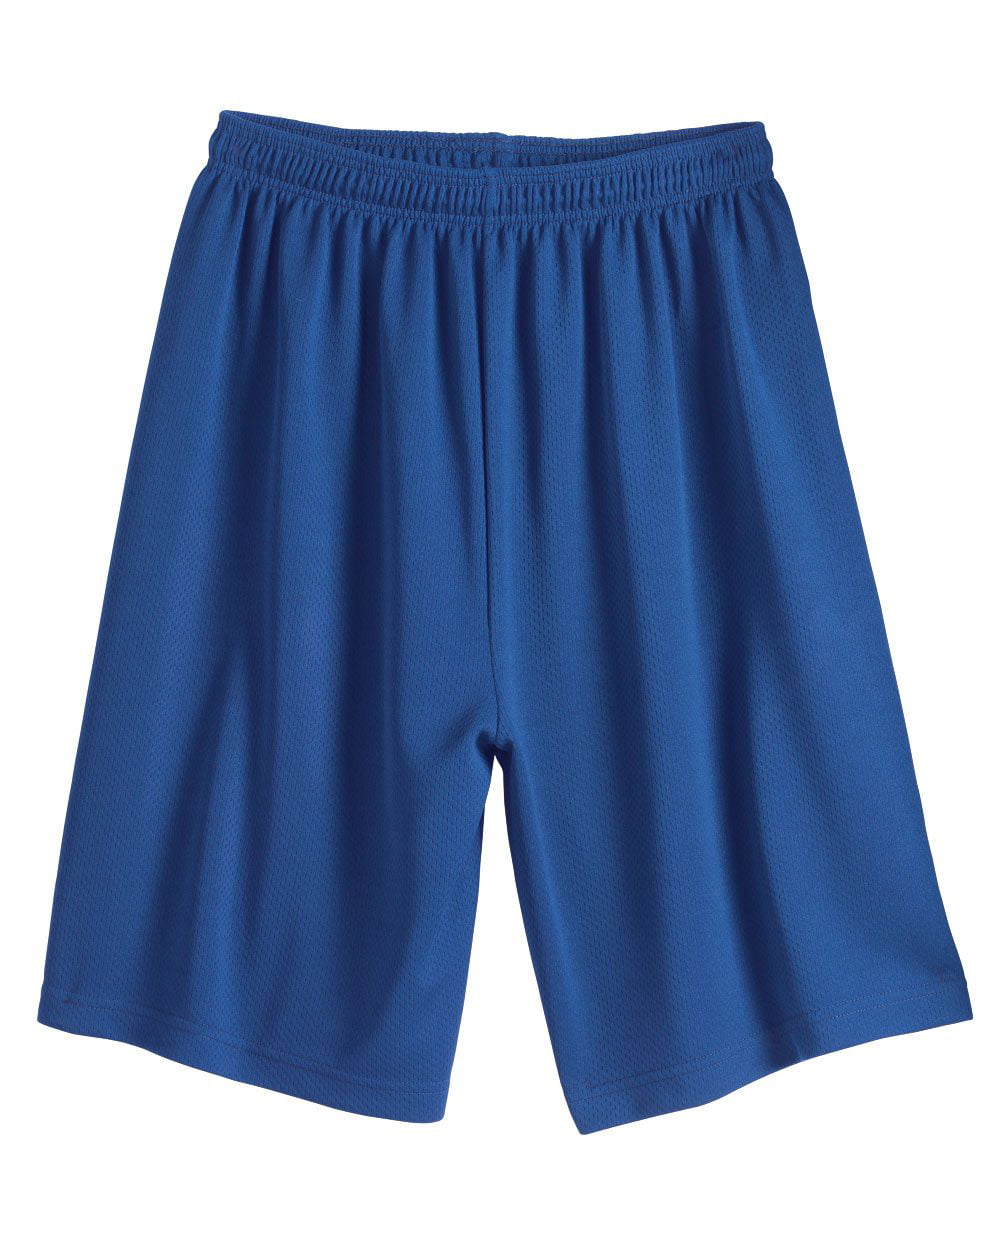 Download C2 Sport - 7" Mock Mesh Shorts - Walmart.com - Walmart.com